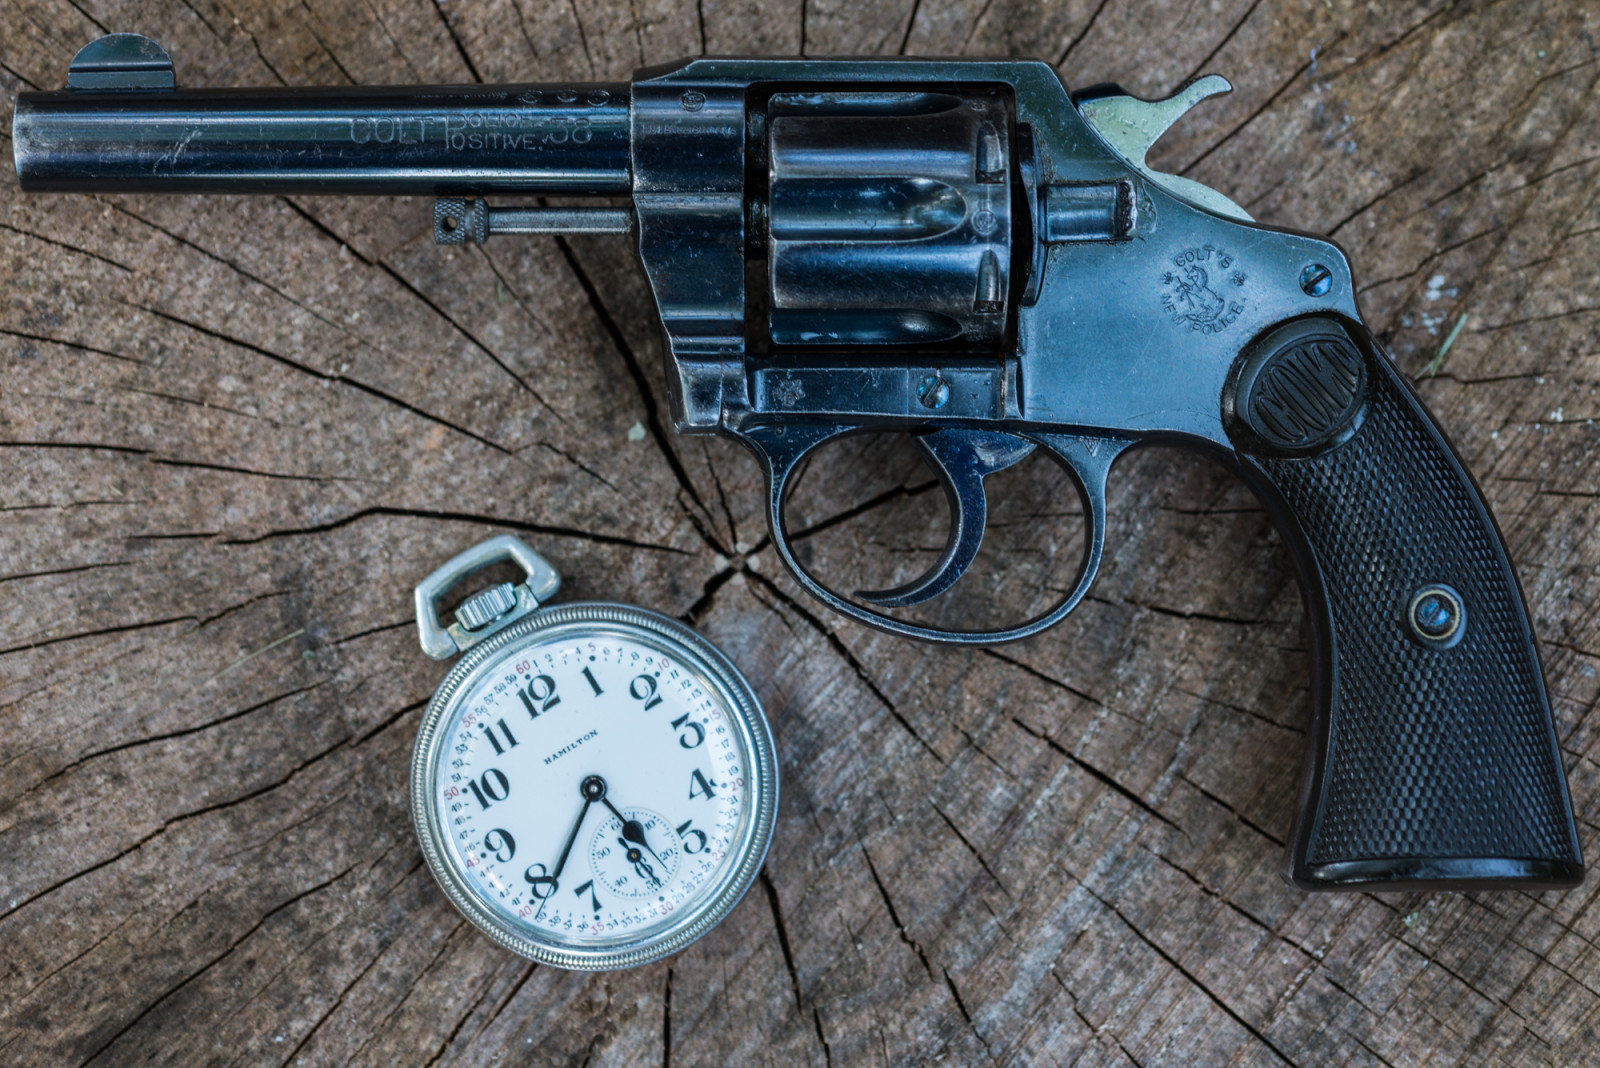 무기, 손목 시계, 리볼버, 1906, 경찰, 망아지